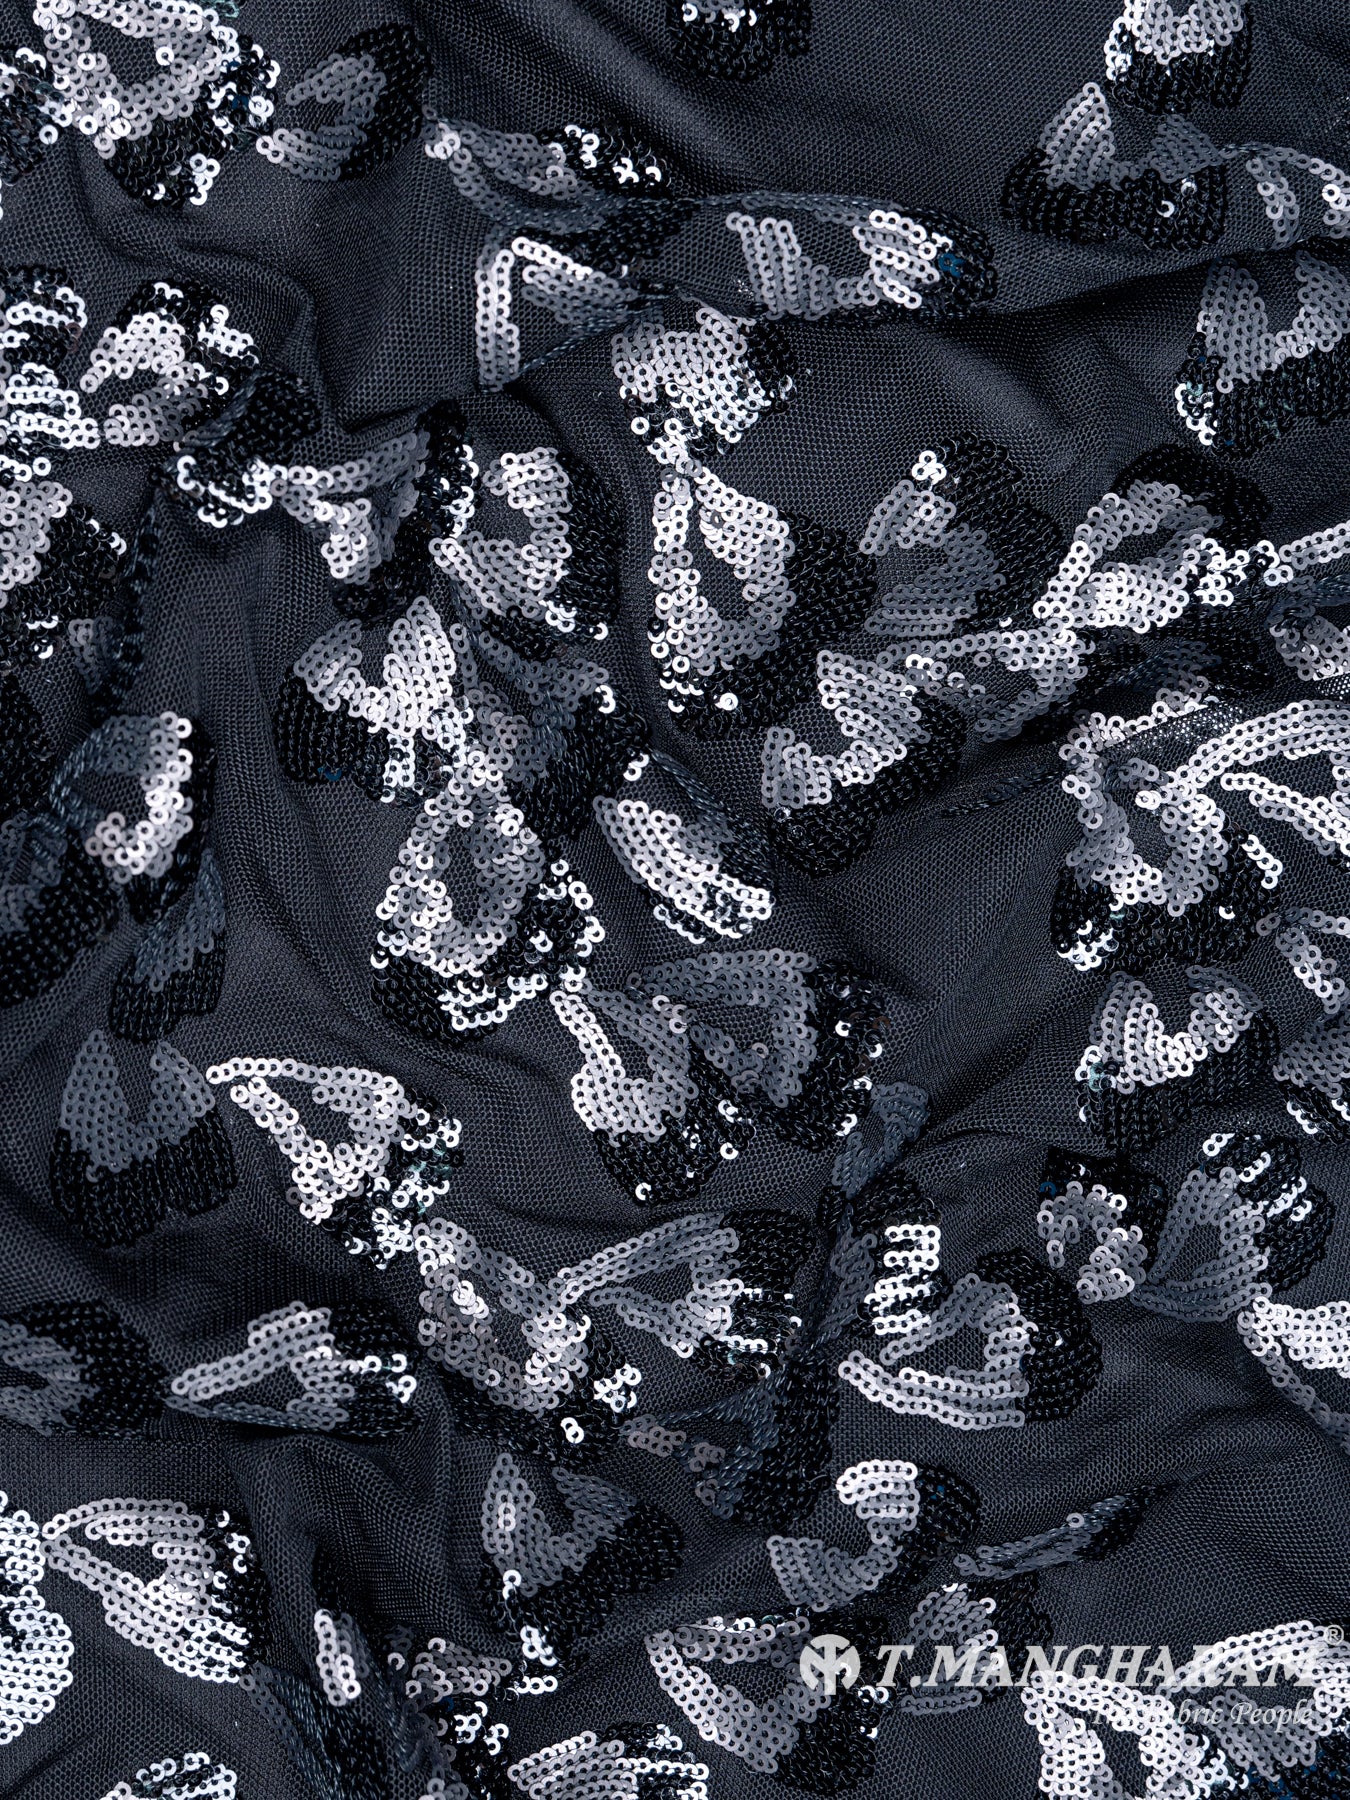 Black Fancy Net Fabric - EC4443 view-4